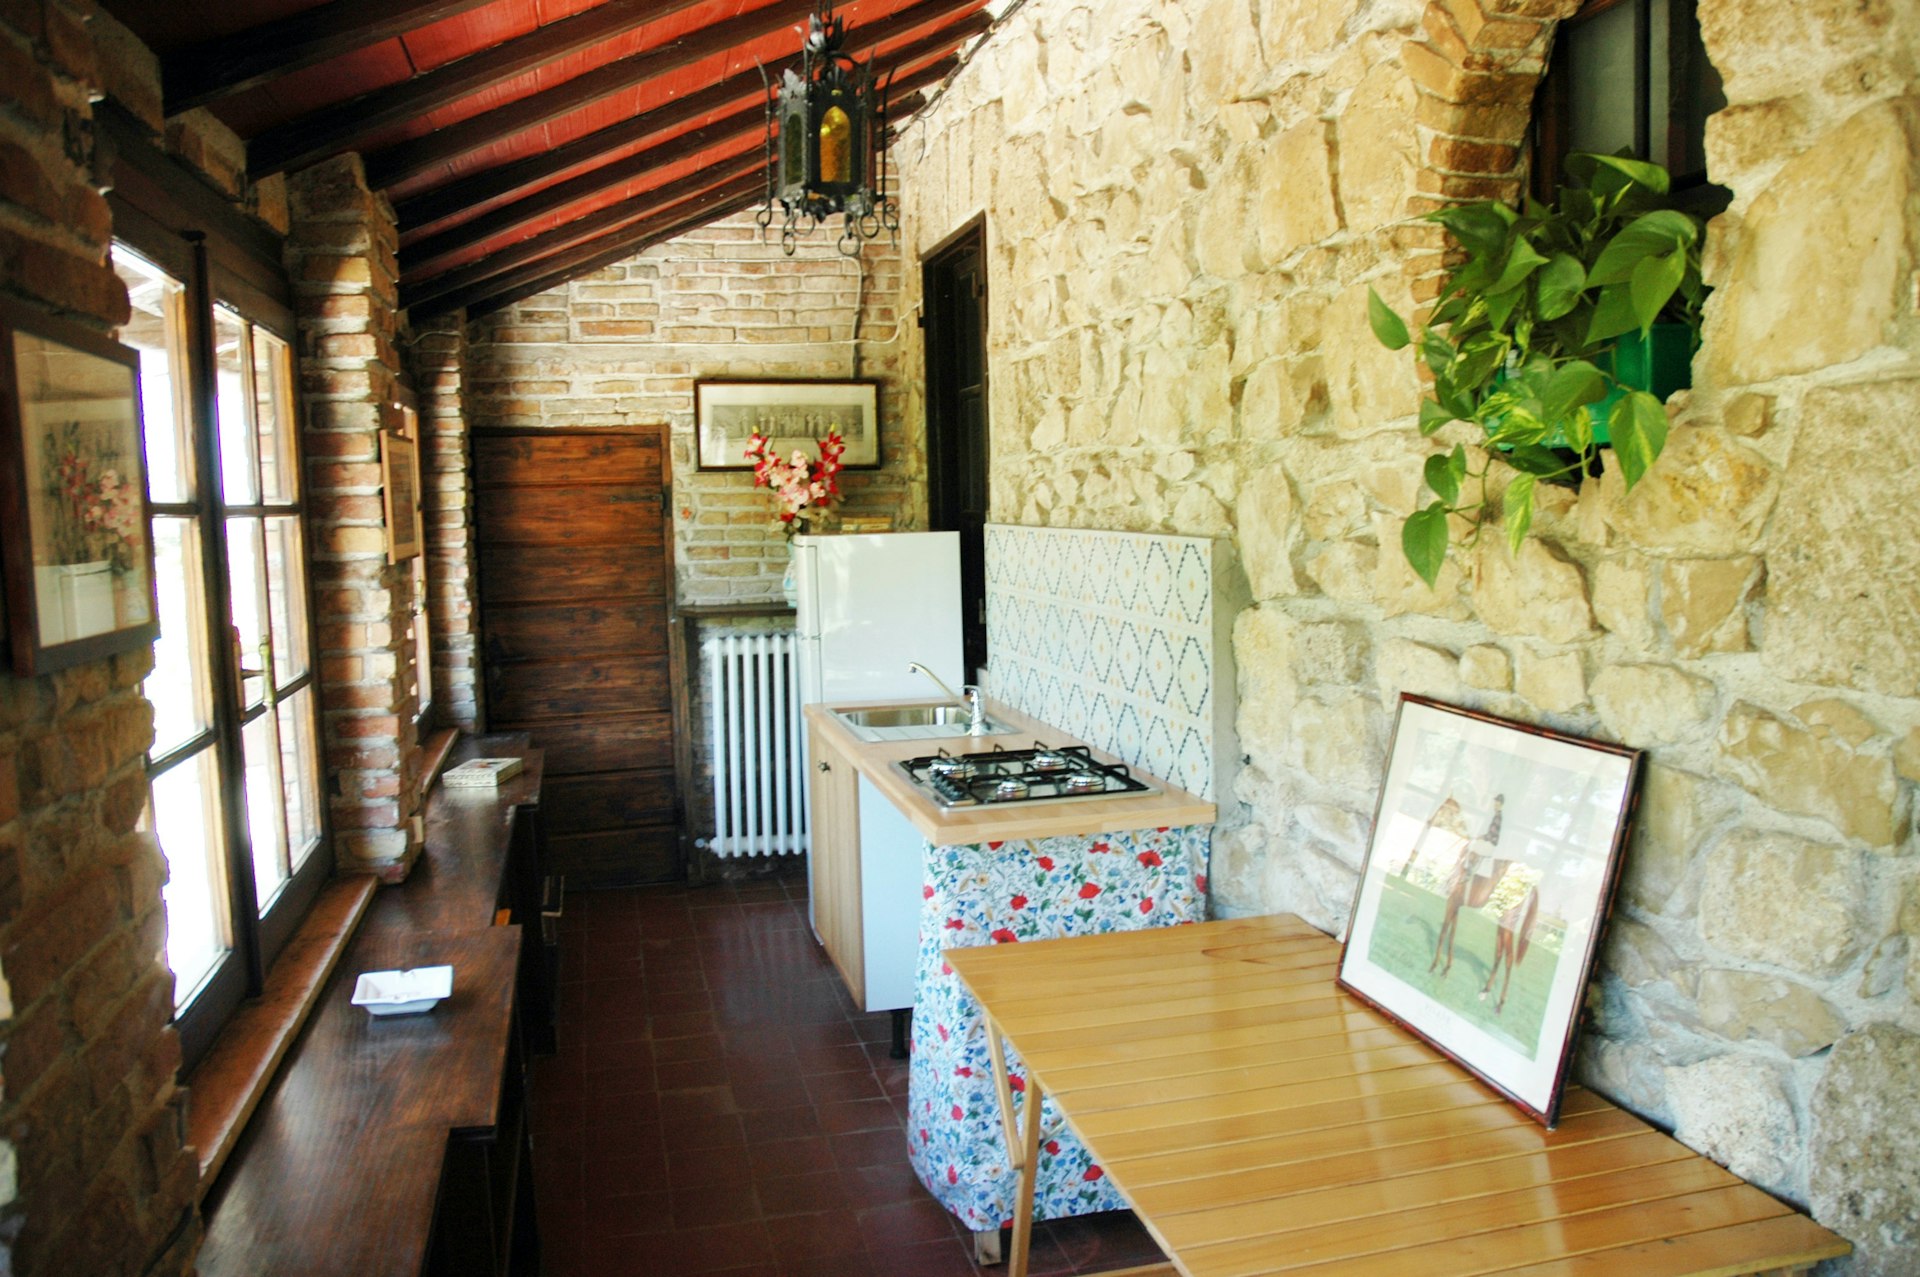 Rustic kitchen of Italian villa